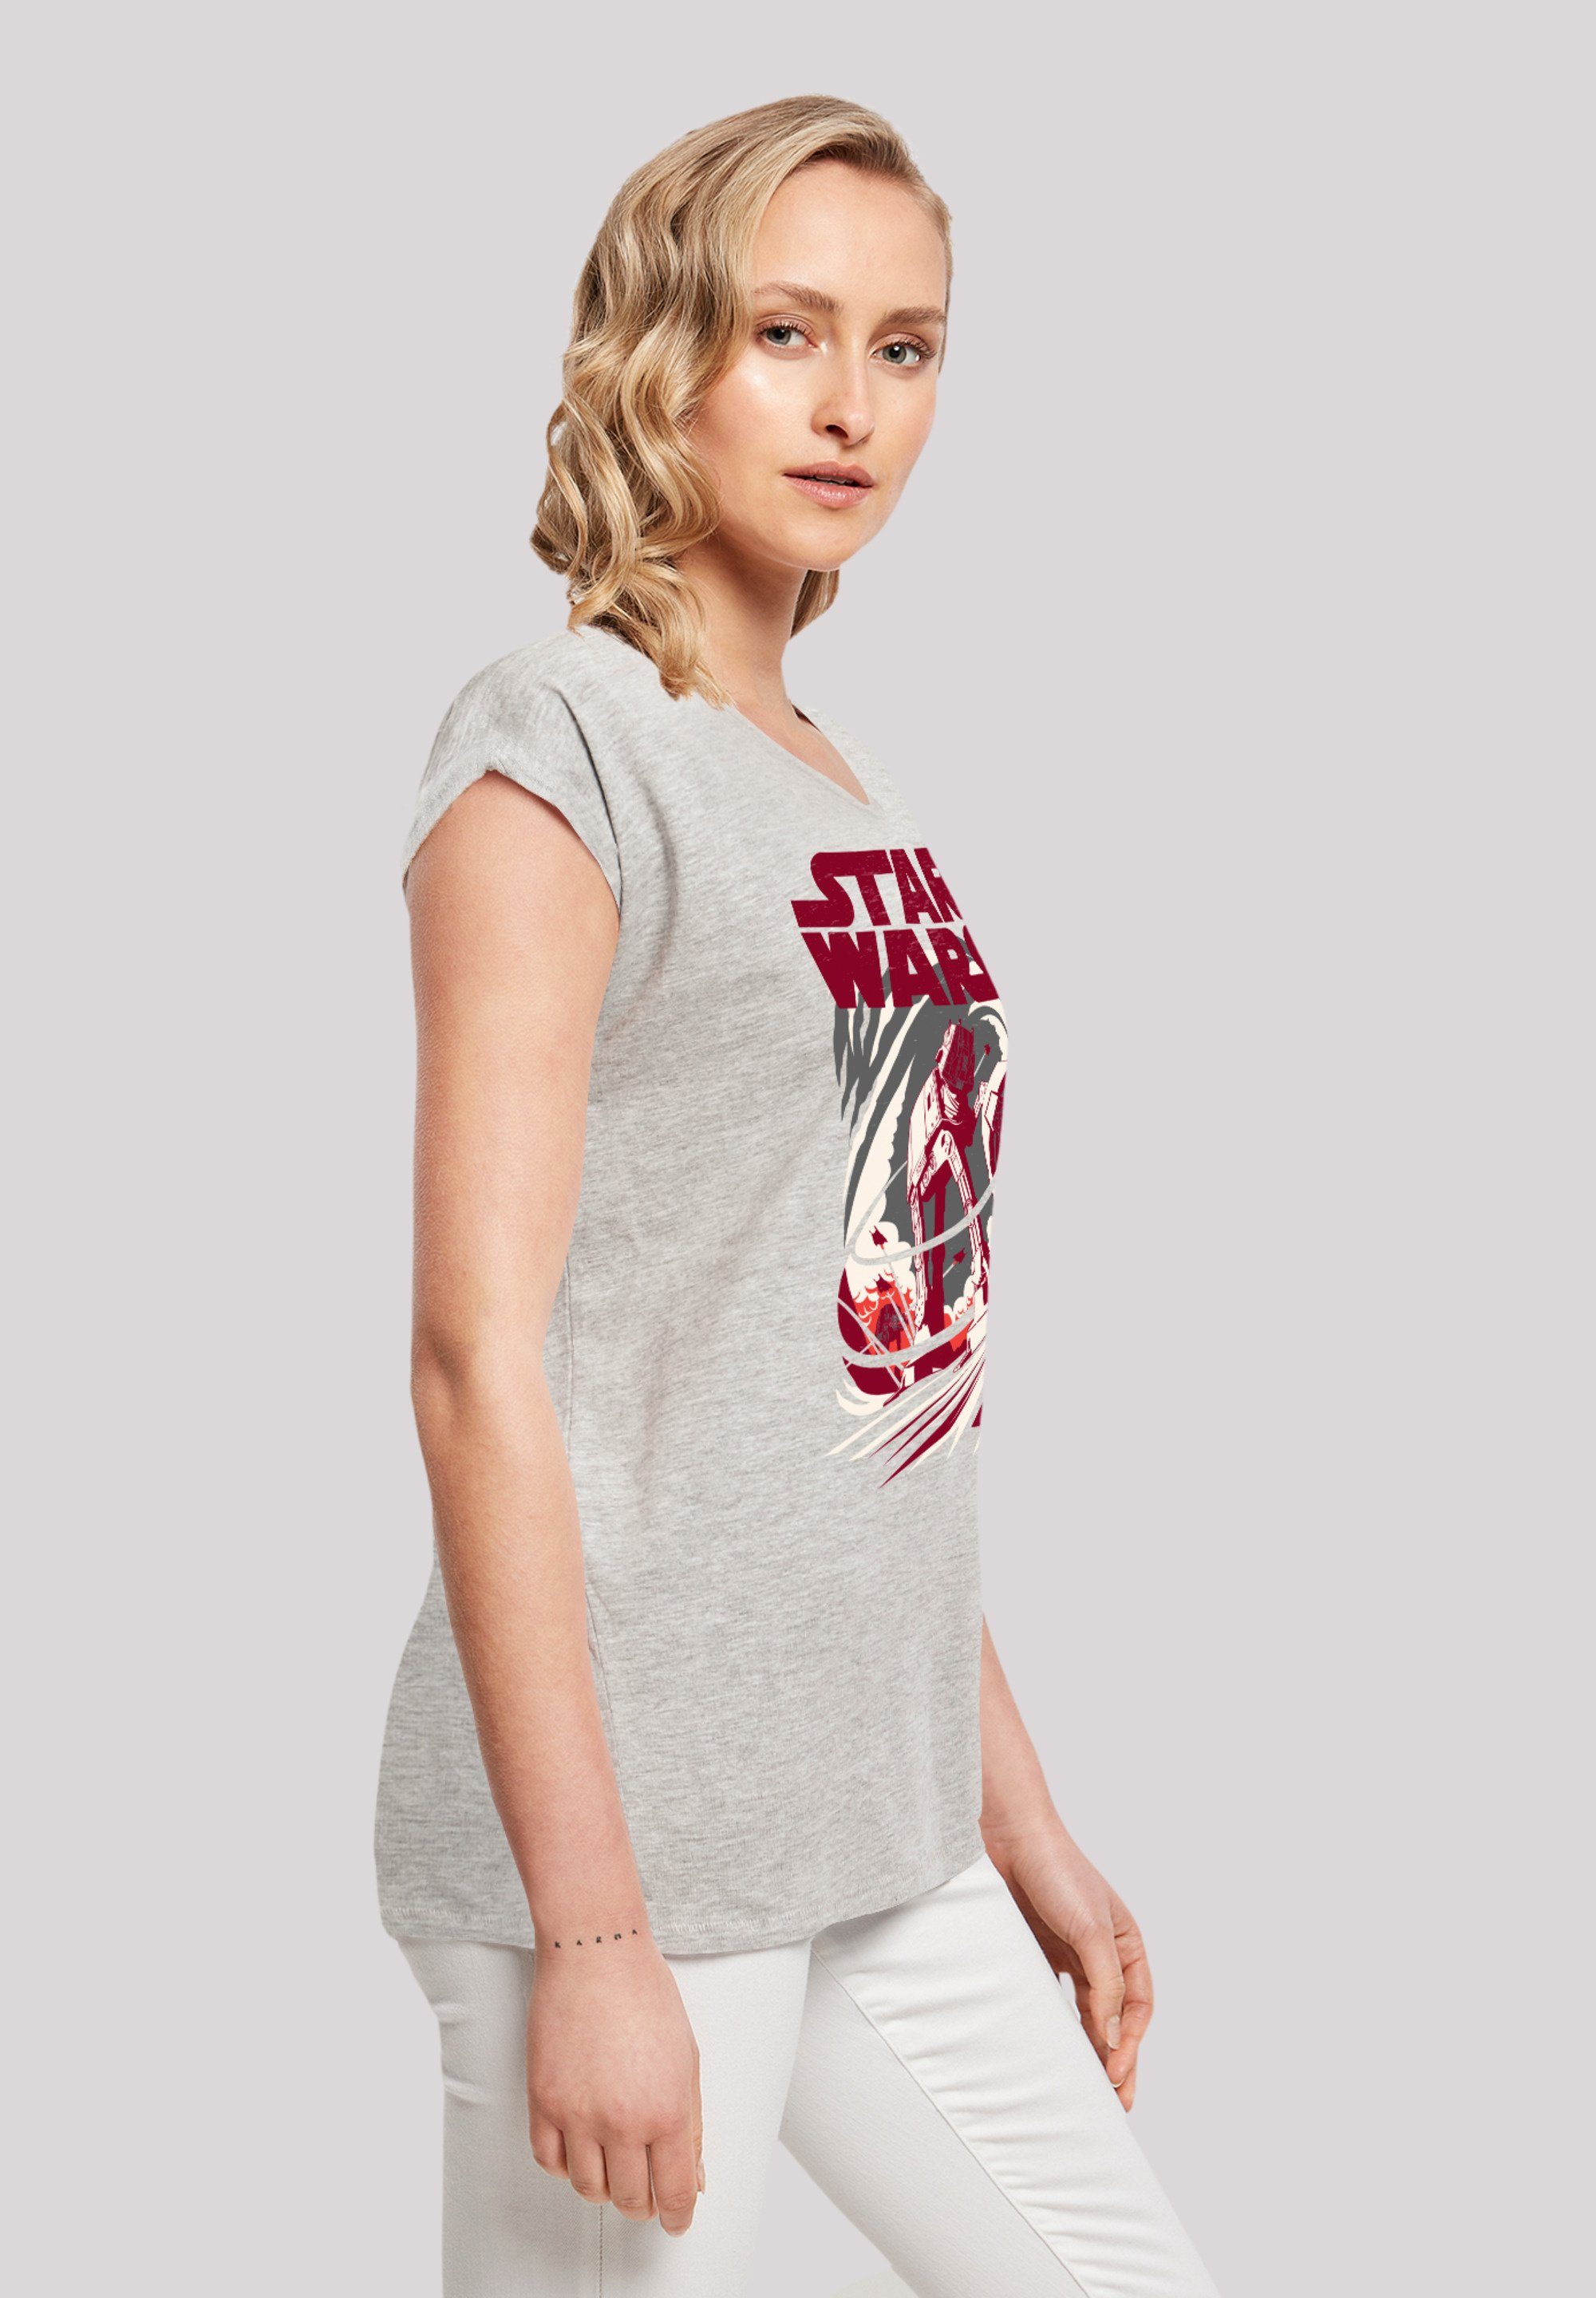 F4NT4STIC T-Shirt Star Wars Turmoil grey Premium heather Qualität